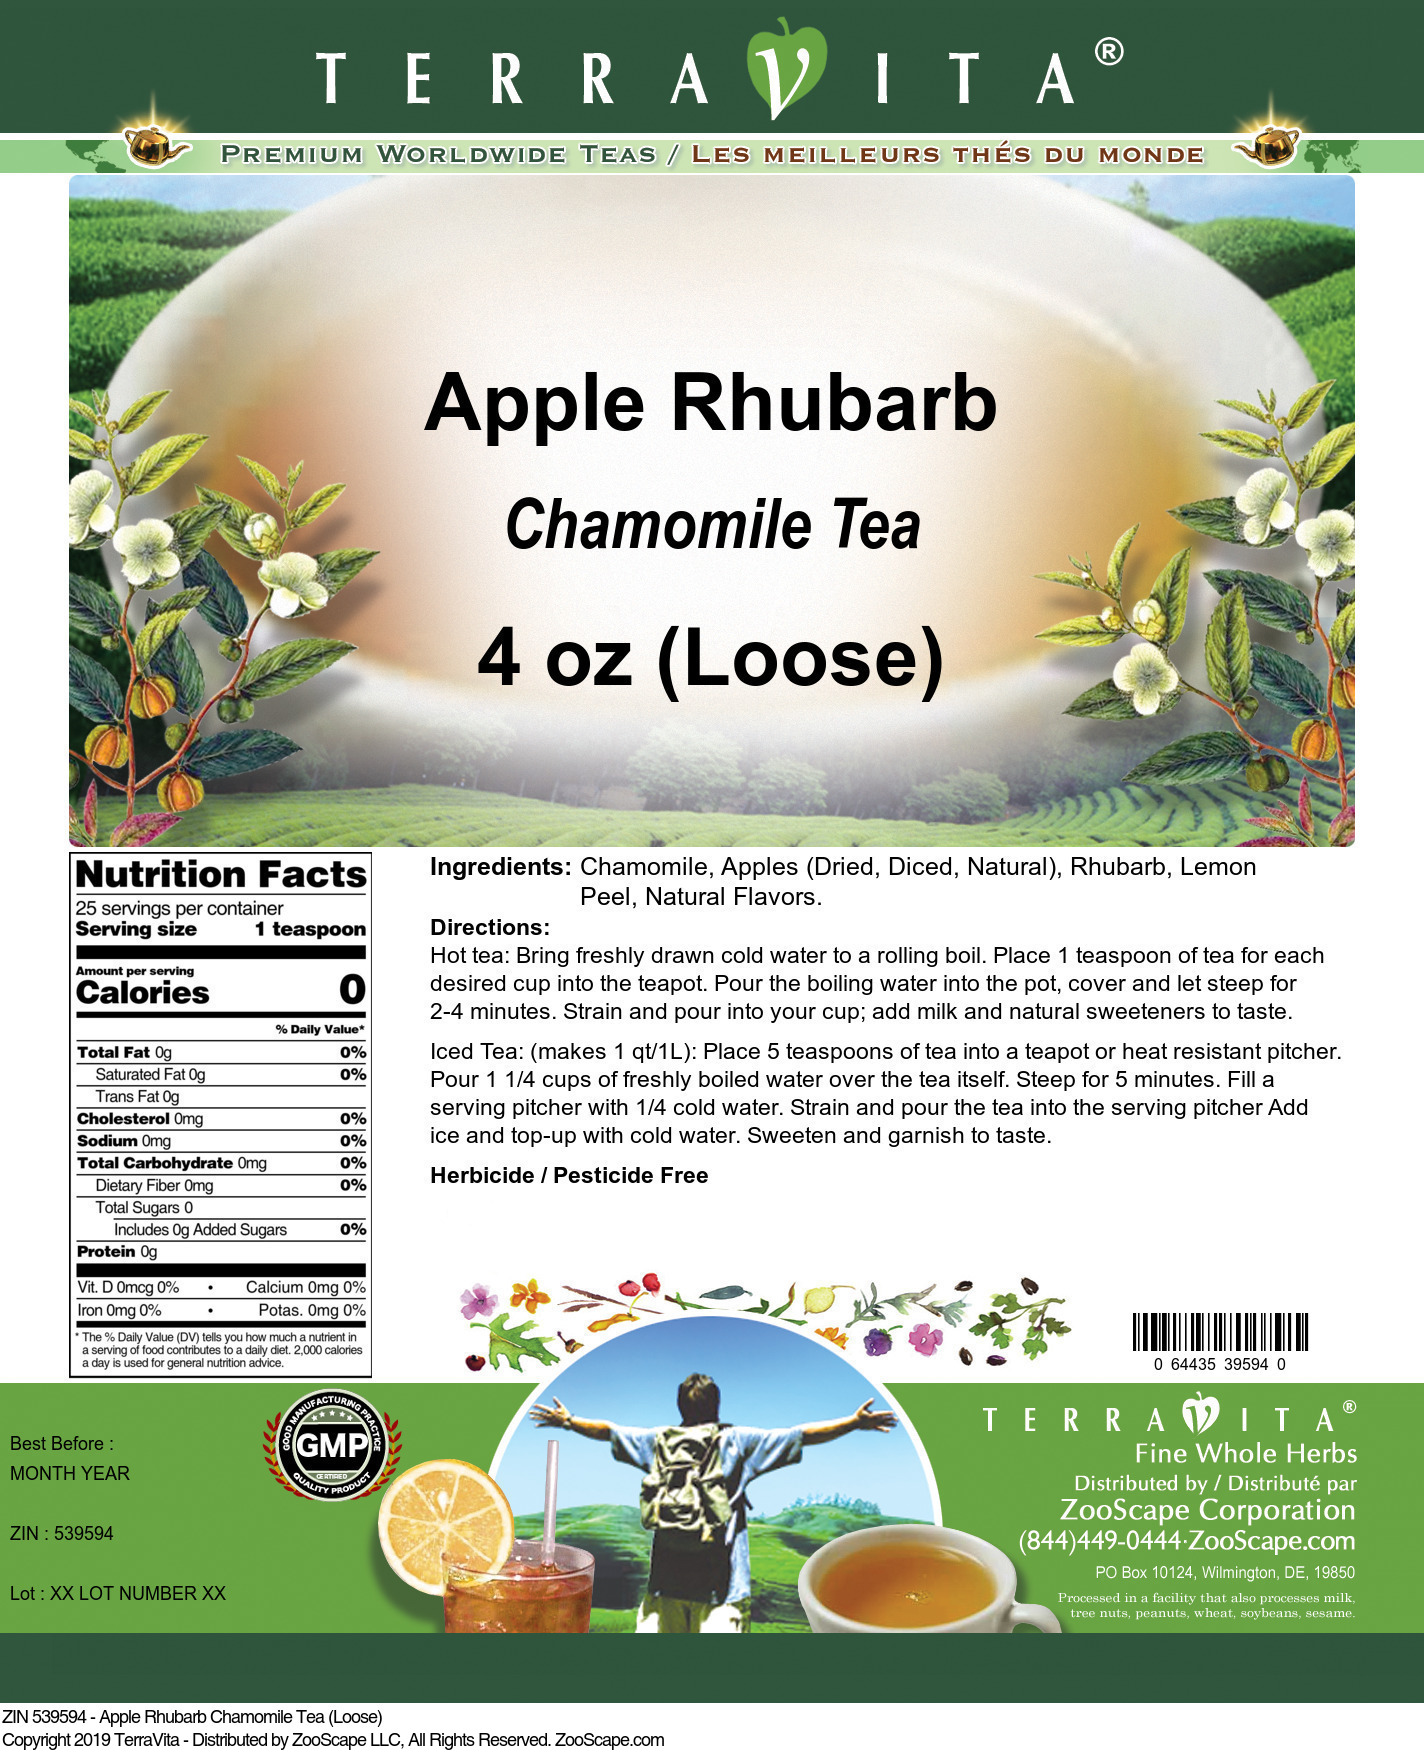 Apple Rhubarb Chamomile Tea (Loose) - Label